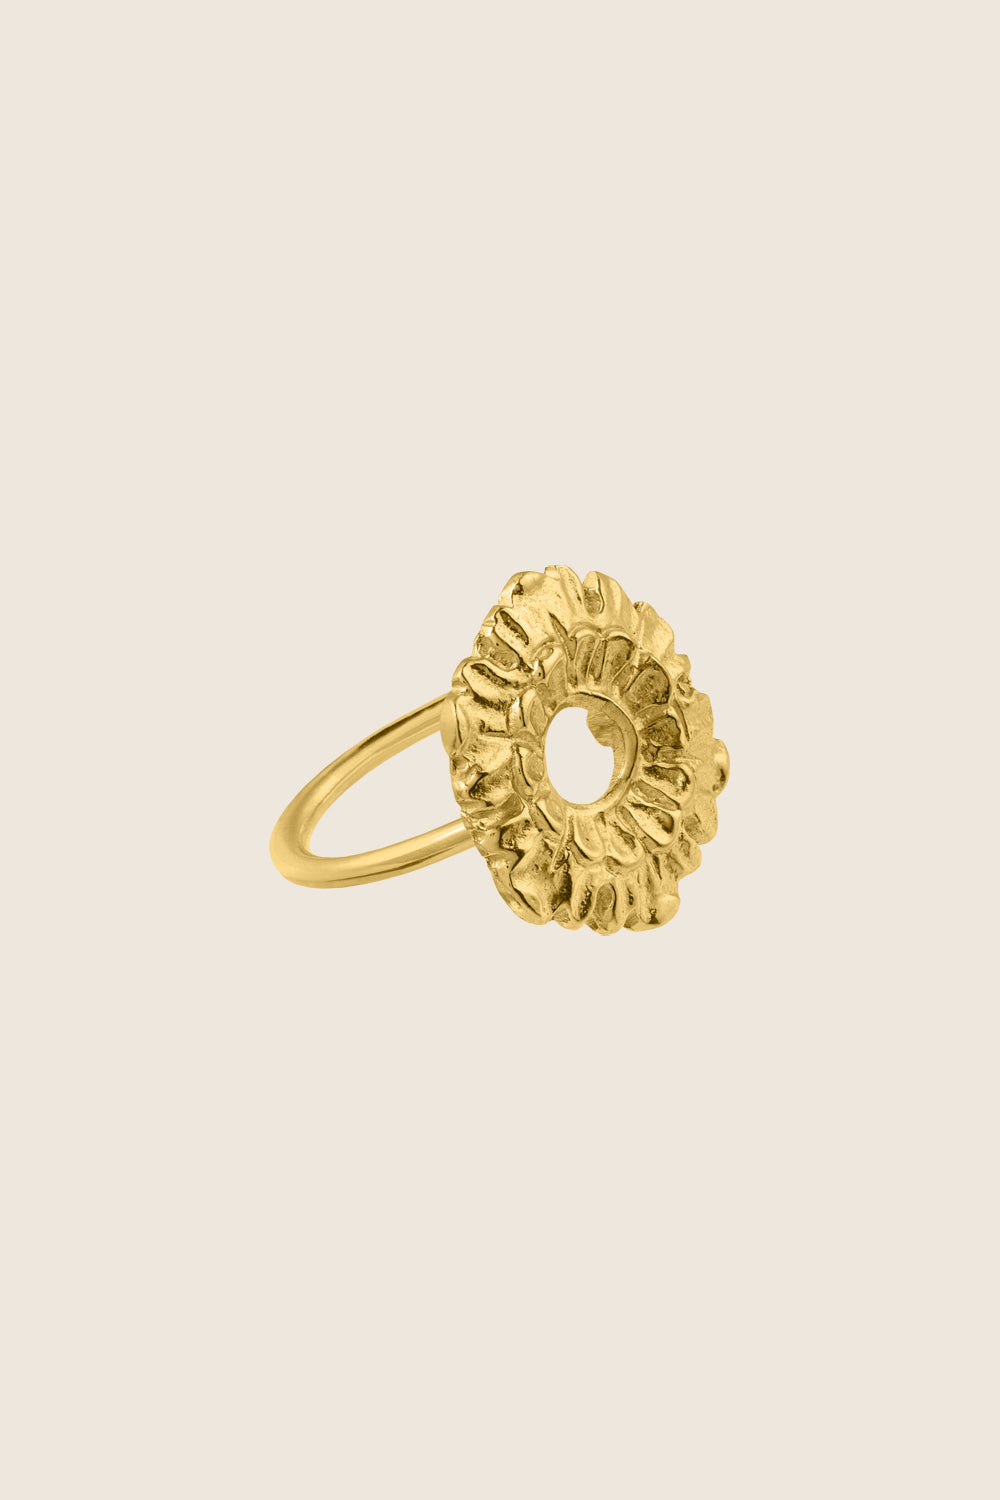 pierścionek kwiat złocone srebro 925 LATIA biżuteria artystyczna UMIAR